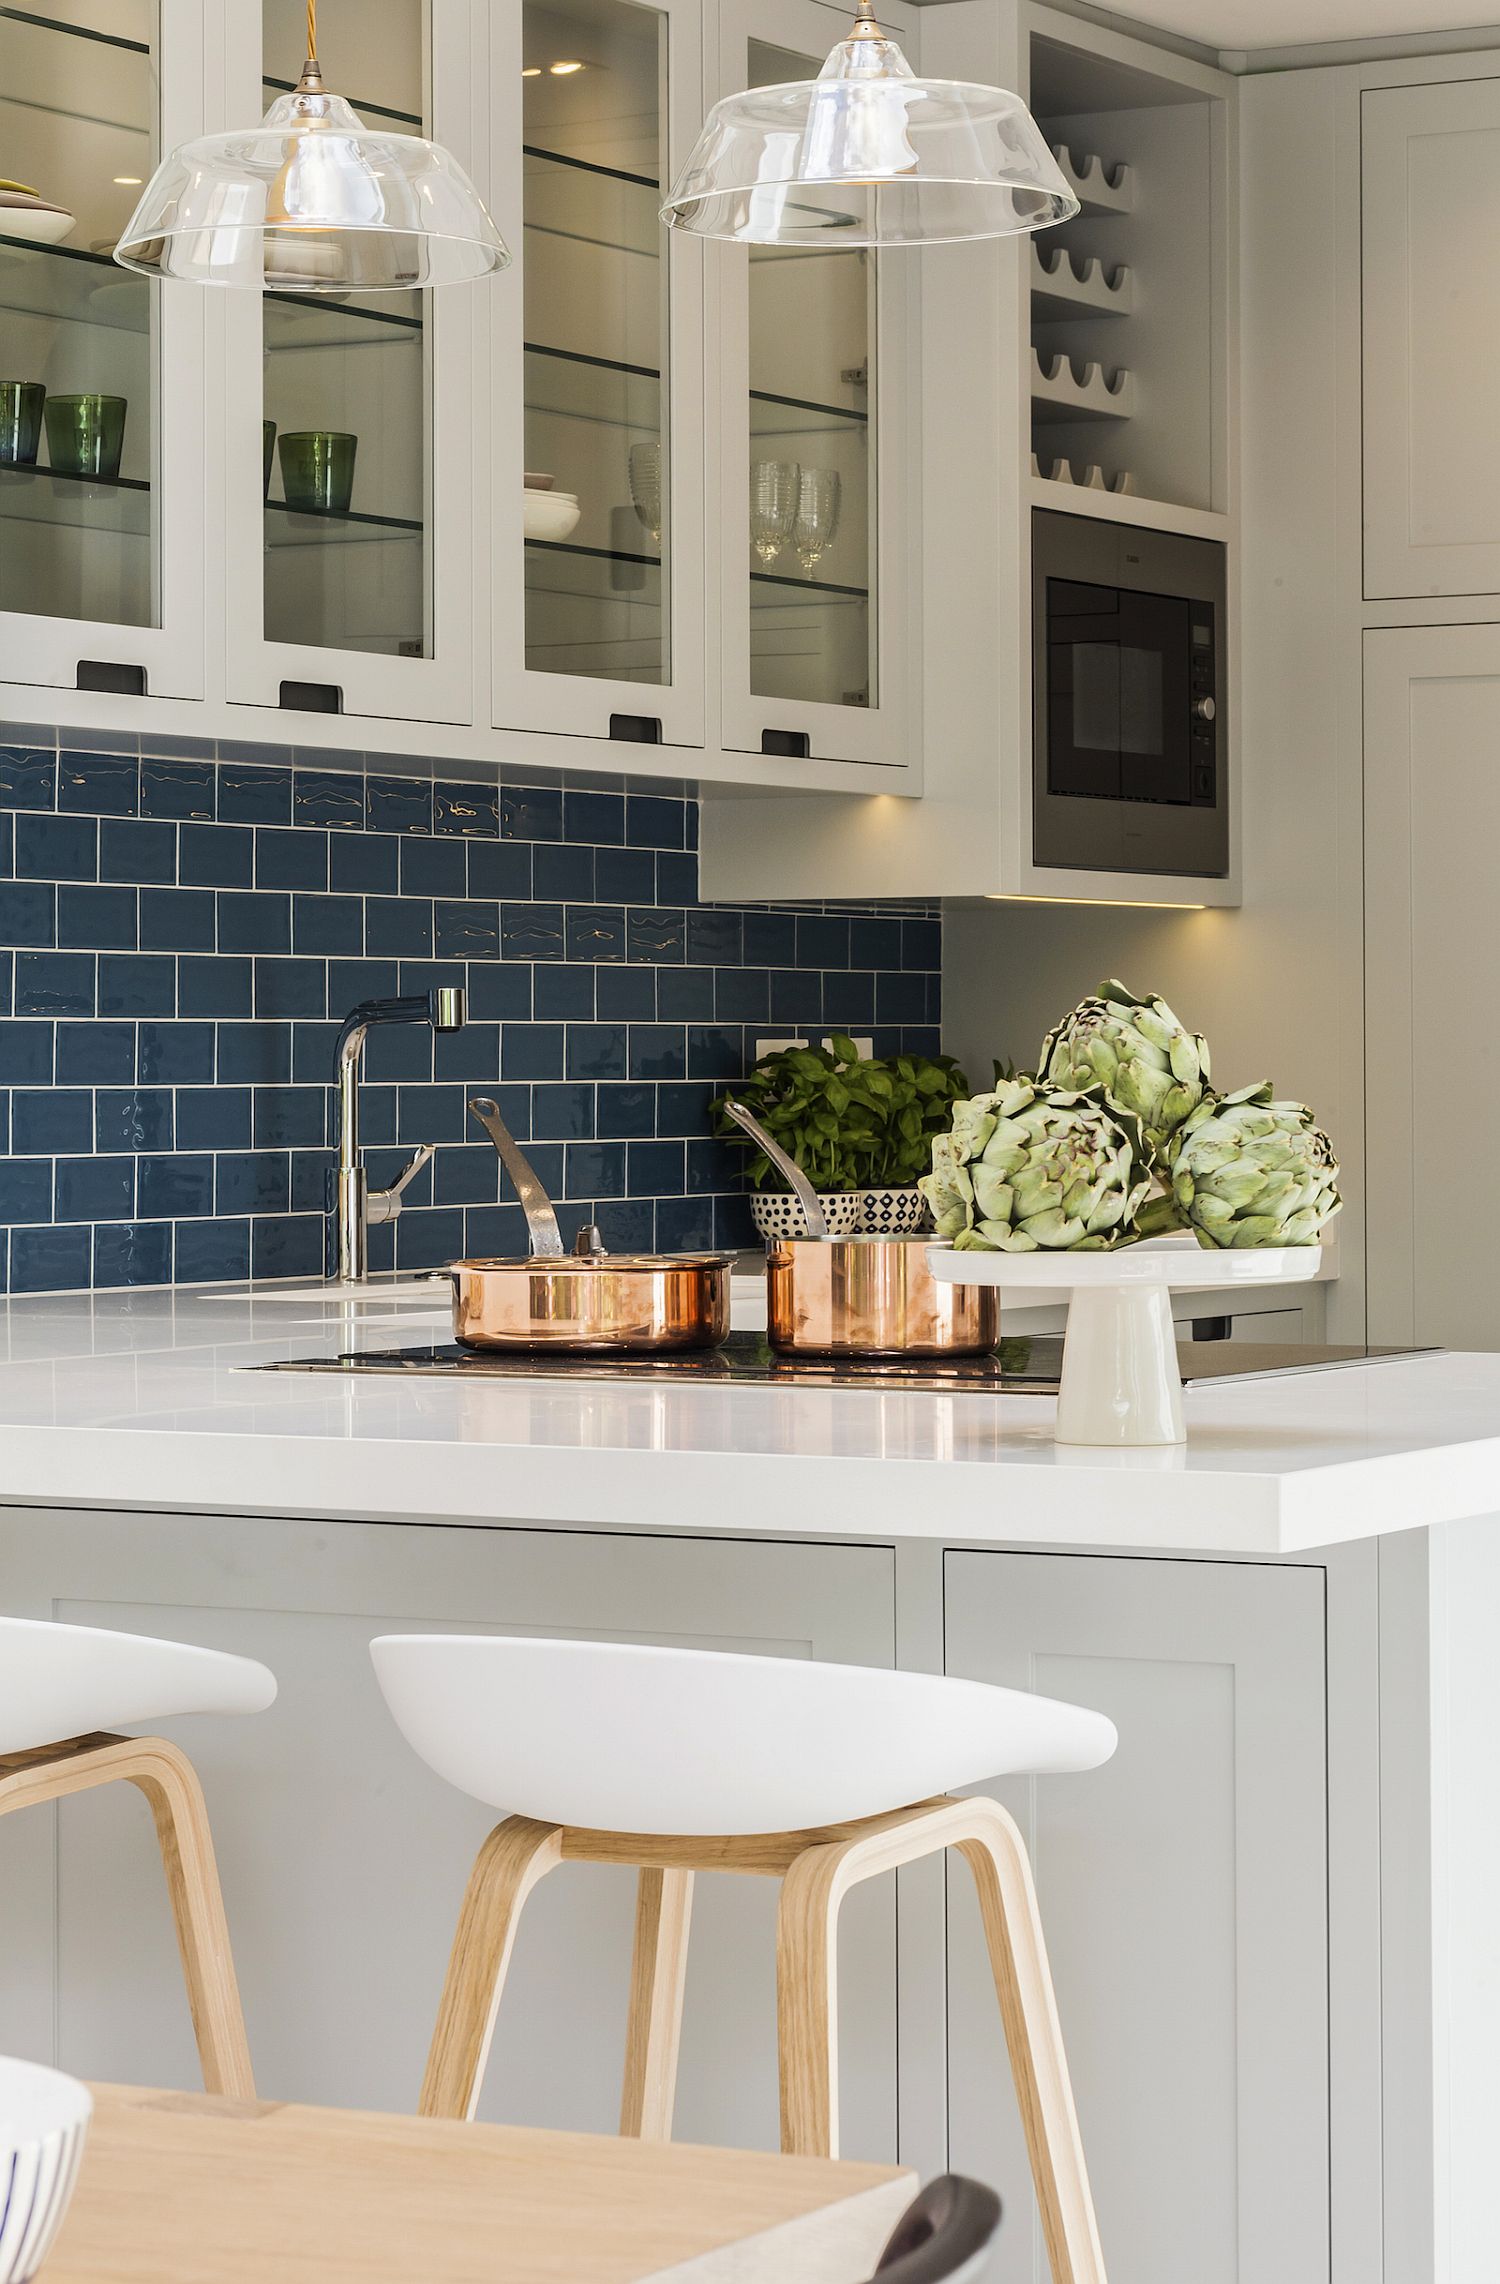 Stylish contemporary kitchen with blue tiled backsplash